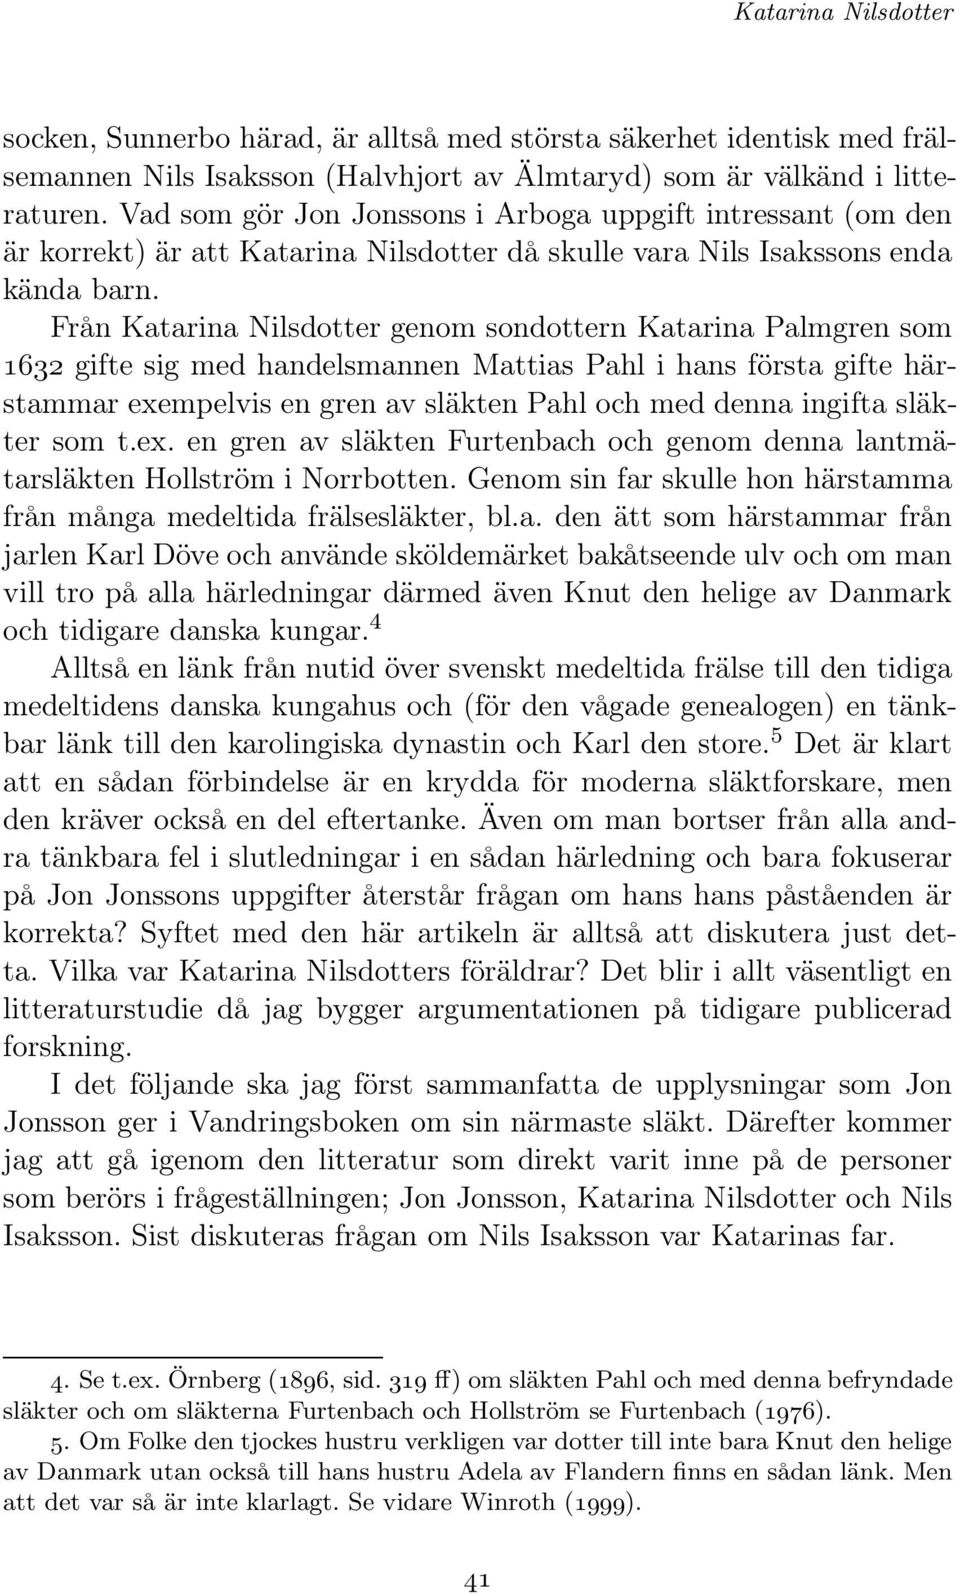 Från Katarina Nilsdotter genom sondottern Katarina Palmgren som 1632 gifte sig med handelsmannen Mattias Pahl i hans första gifte härstammar exempelvis en gren av släkten Pahl och med denna ingifta